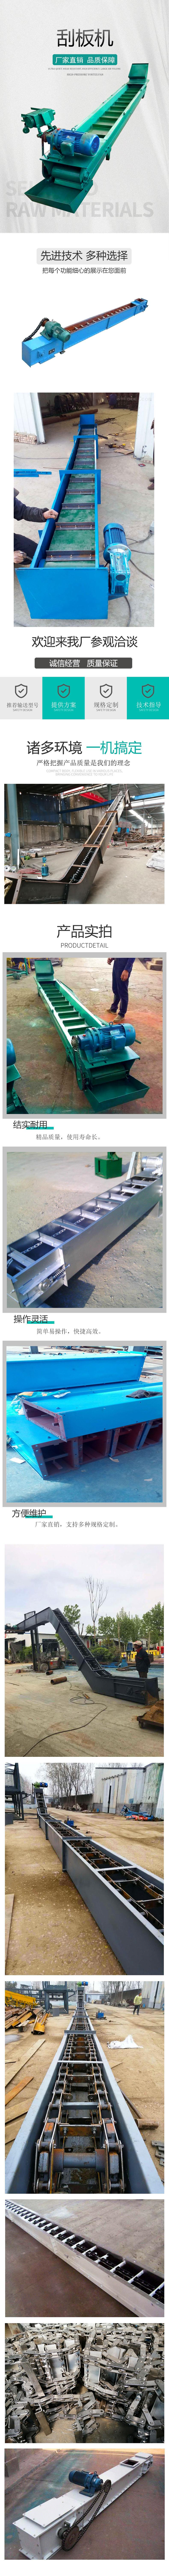 太原市煤炭粉刮板输送机  链条型埋刮板输送机   LJ6